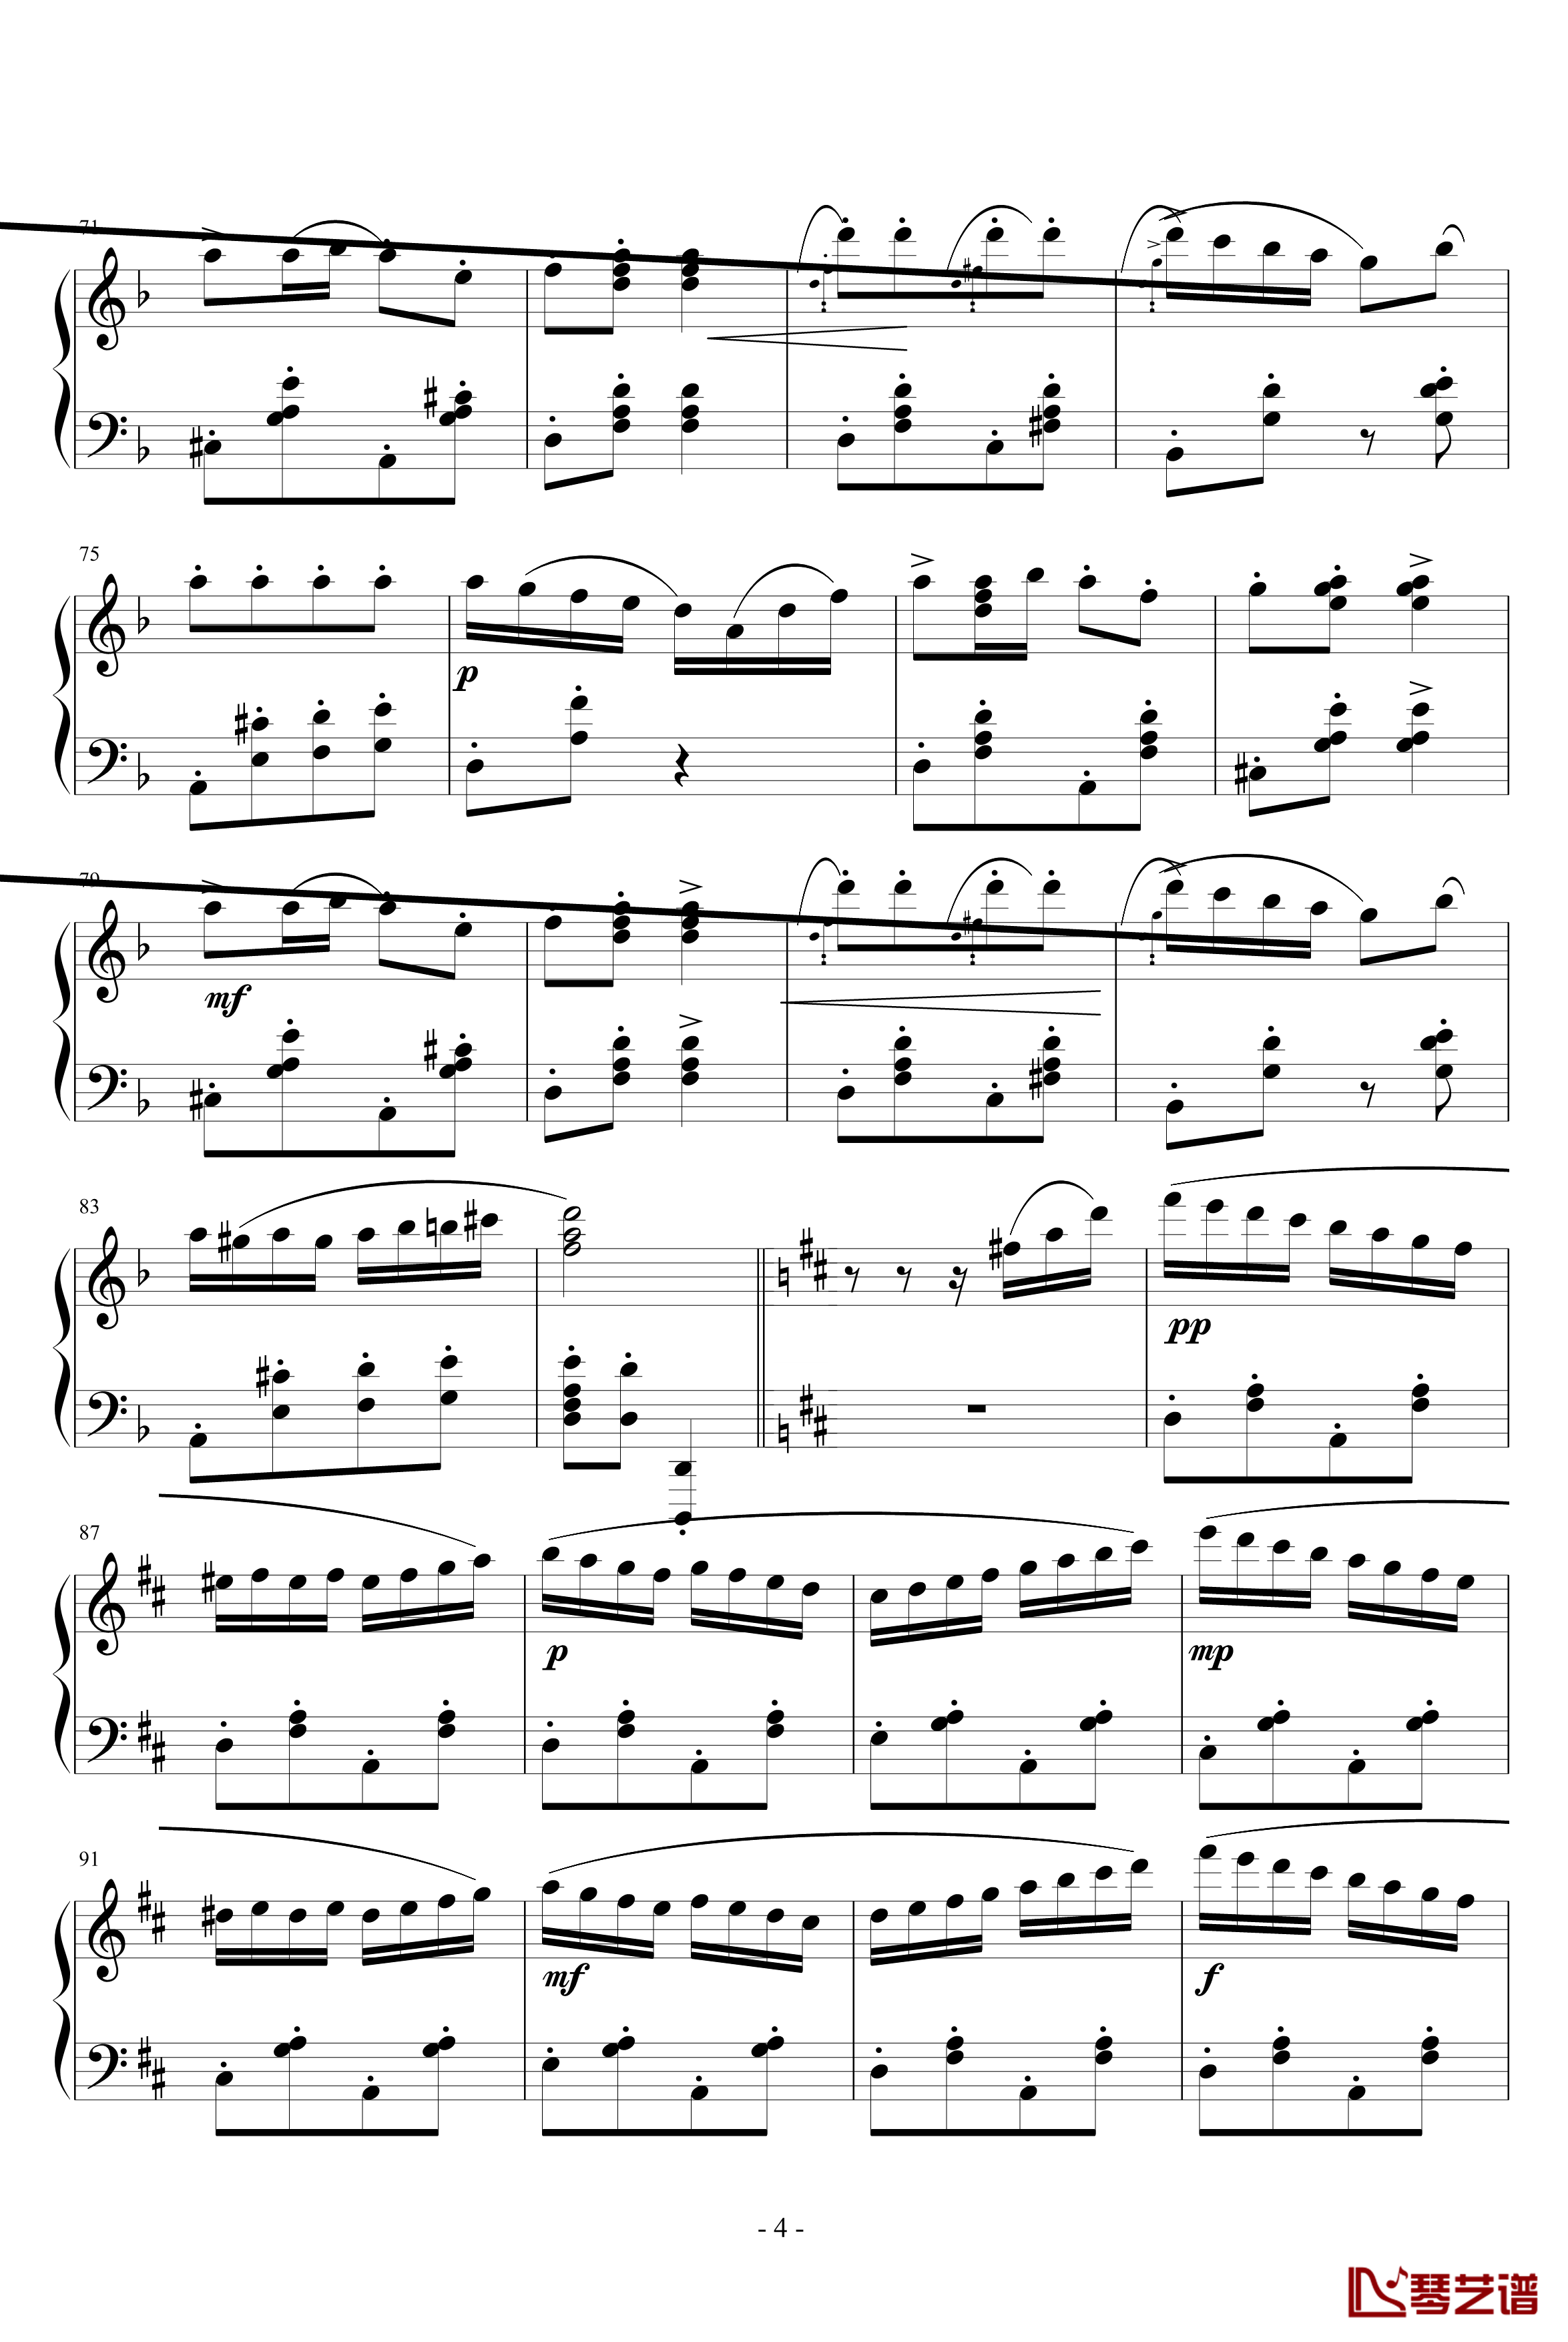 意大利波尔卡钢琴谱-拉赫马尼若夫4